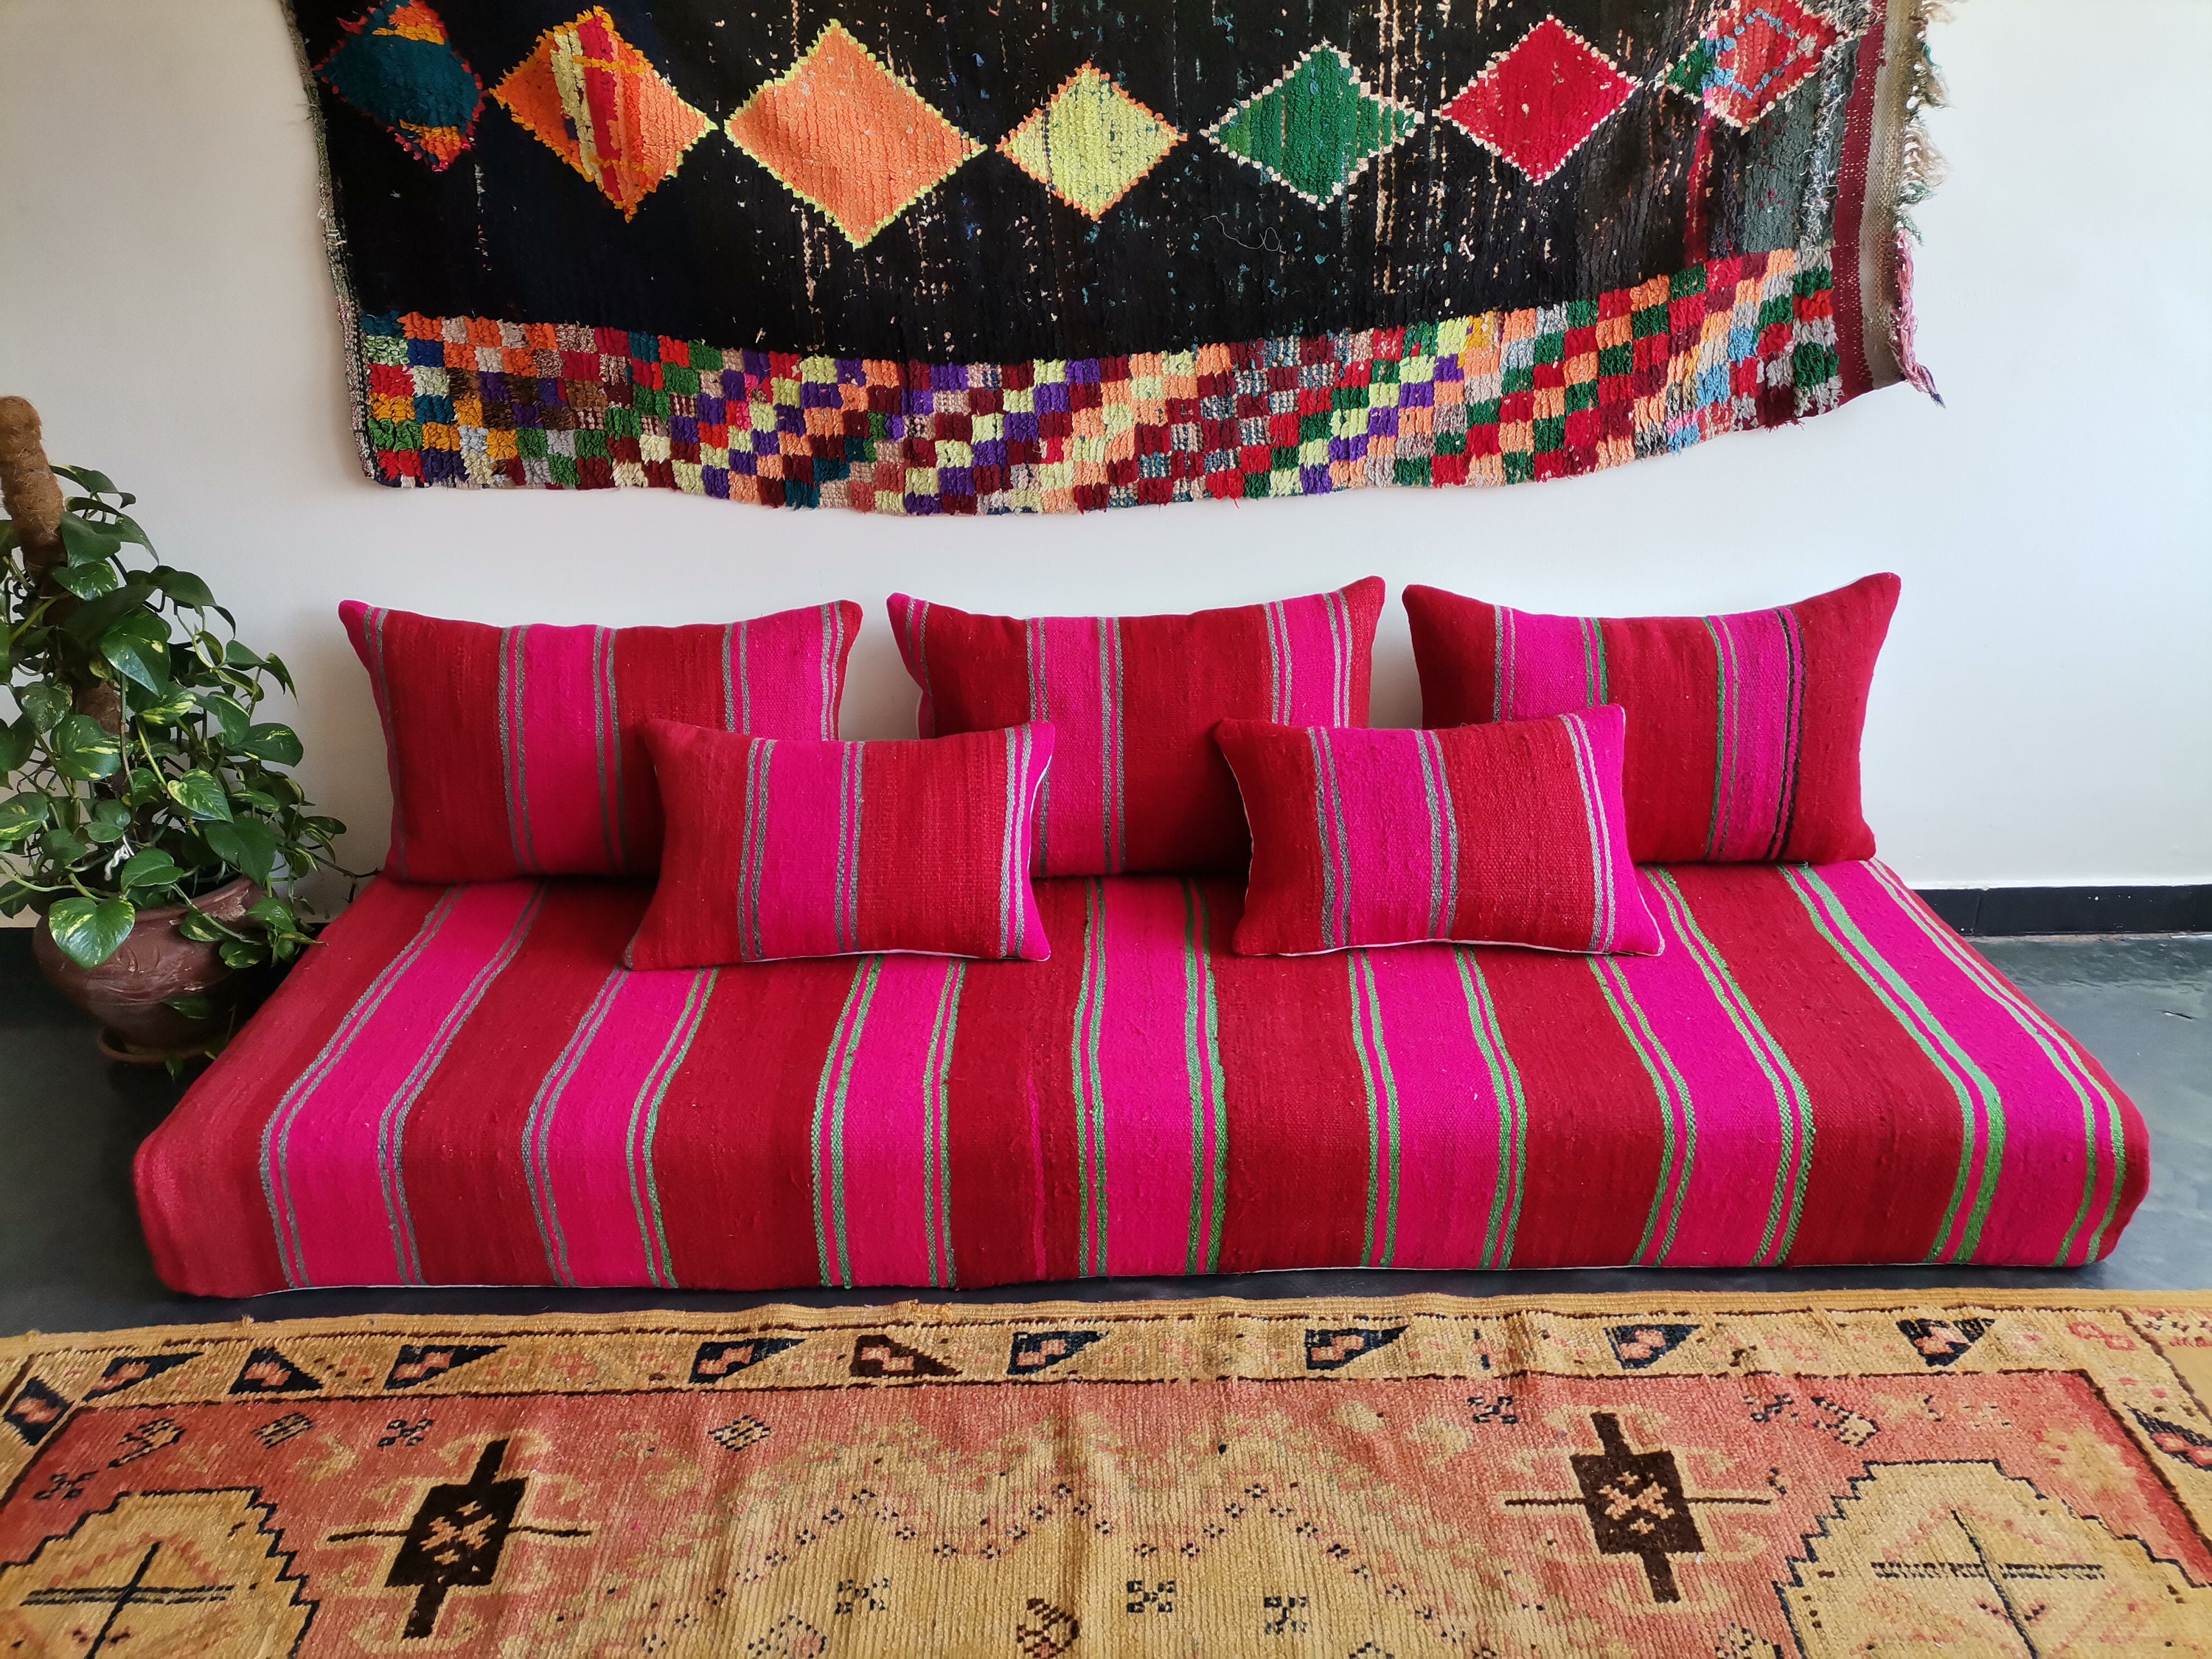 Moroccan Floor Couch 4,5,6 & 7 Ft 120/150/180/210 Cm Unstuffed